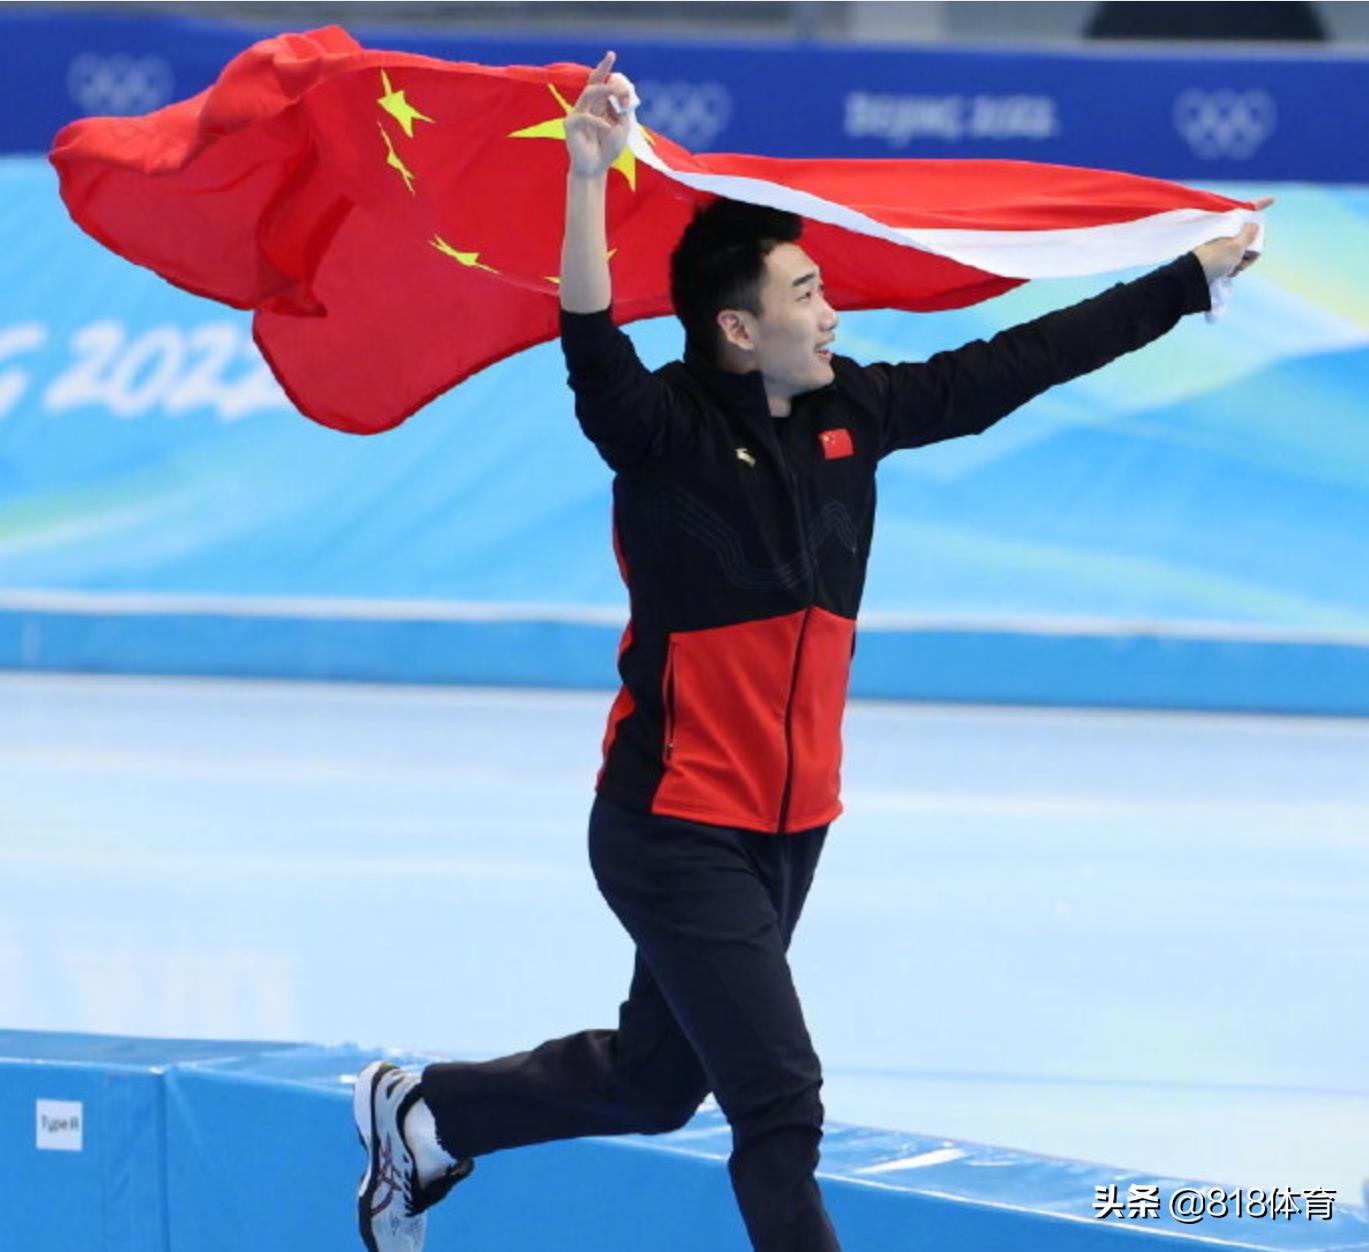 旗手夺金!高亭宇速滑夺冠中国男子第一人,8岁瞒着父母报名滑冰班